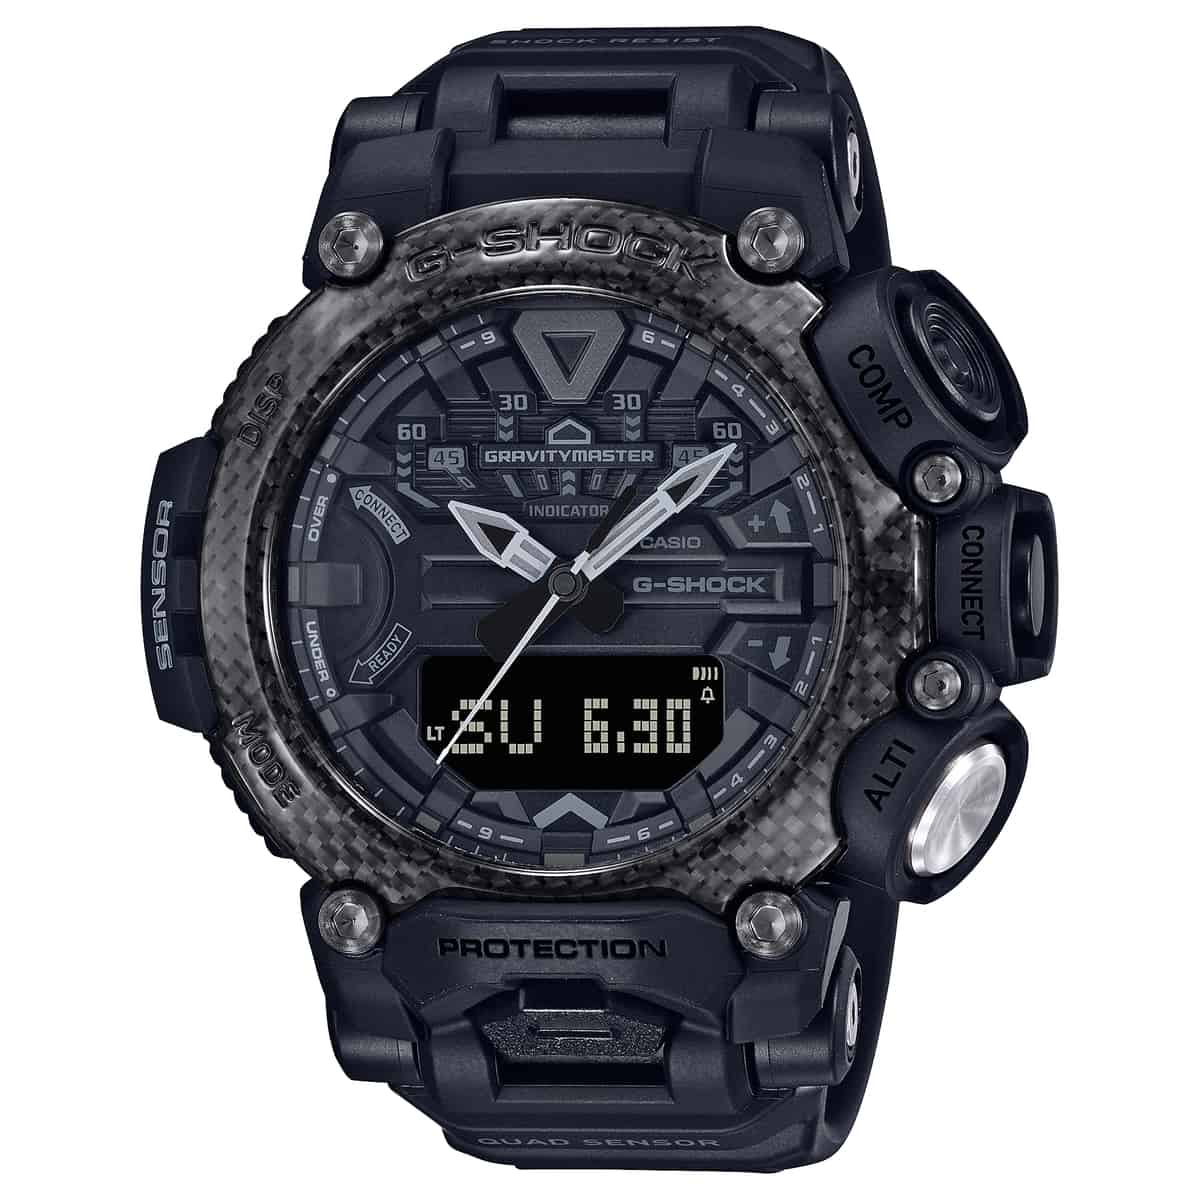 Casio G-Shock Gravitymaster GR-B200 watch